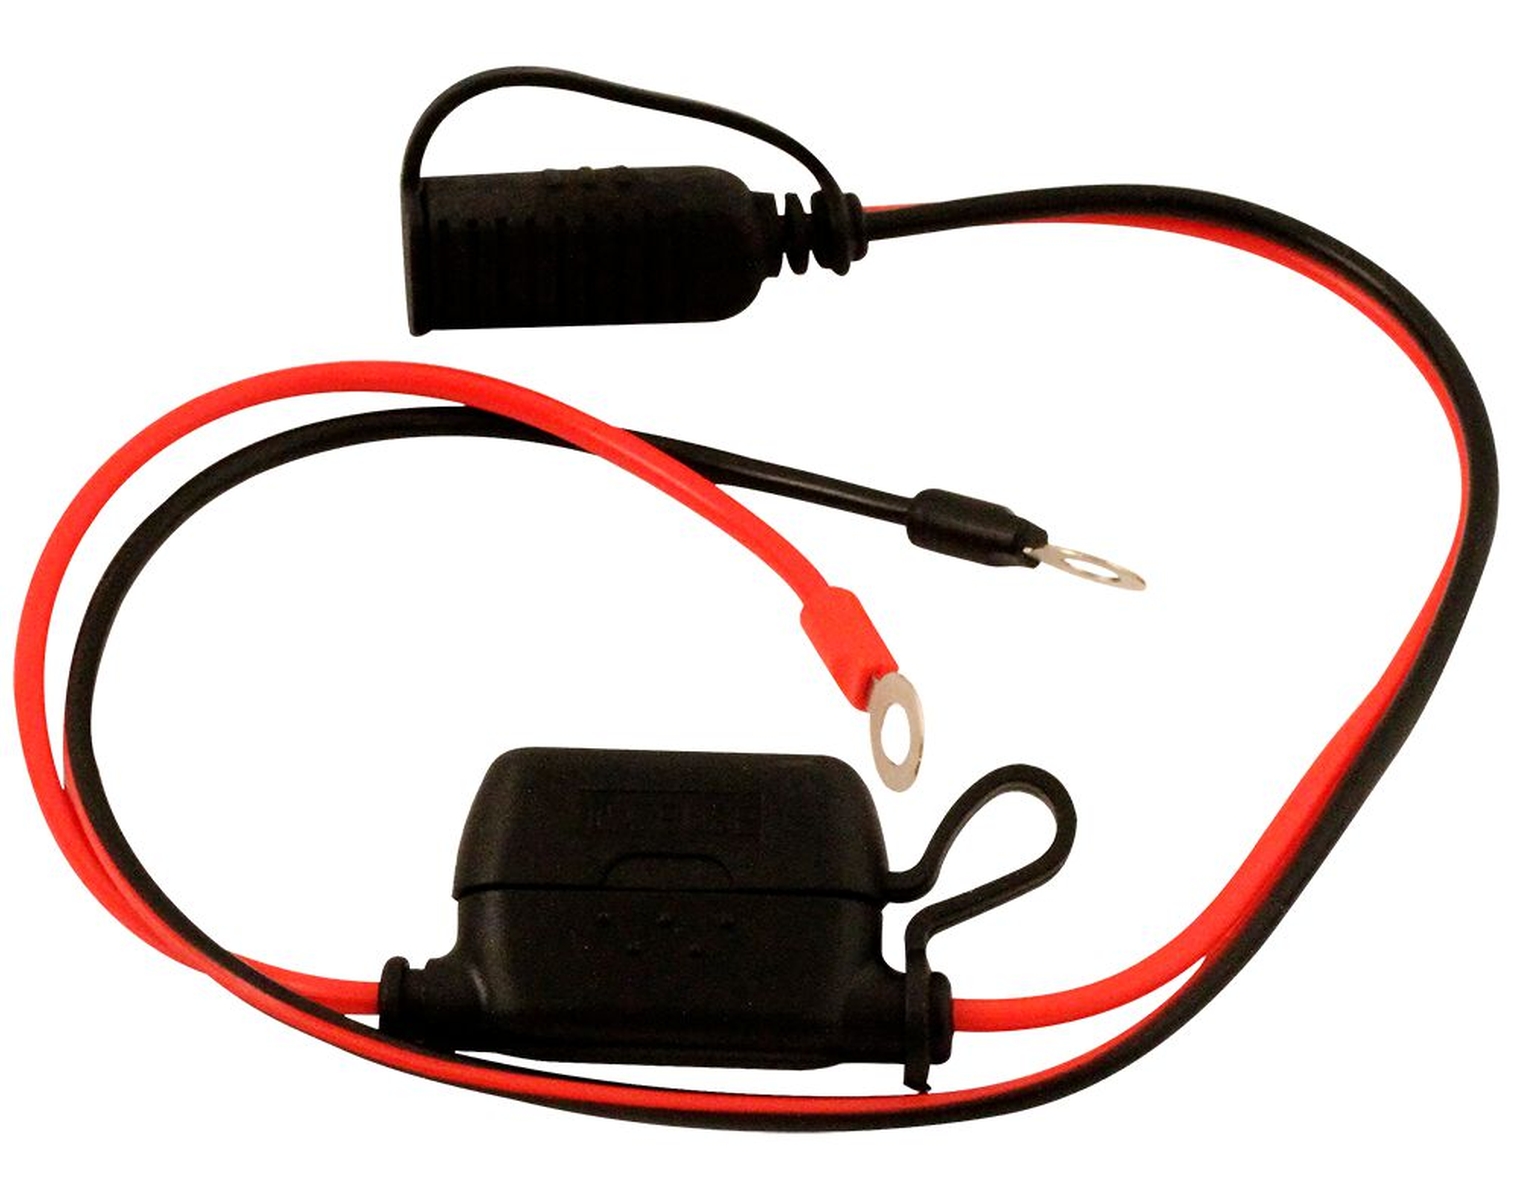  Cable de Liaison Chargeur de Batterie C3